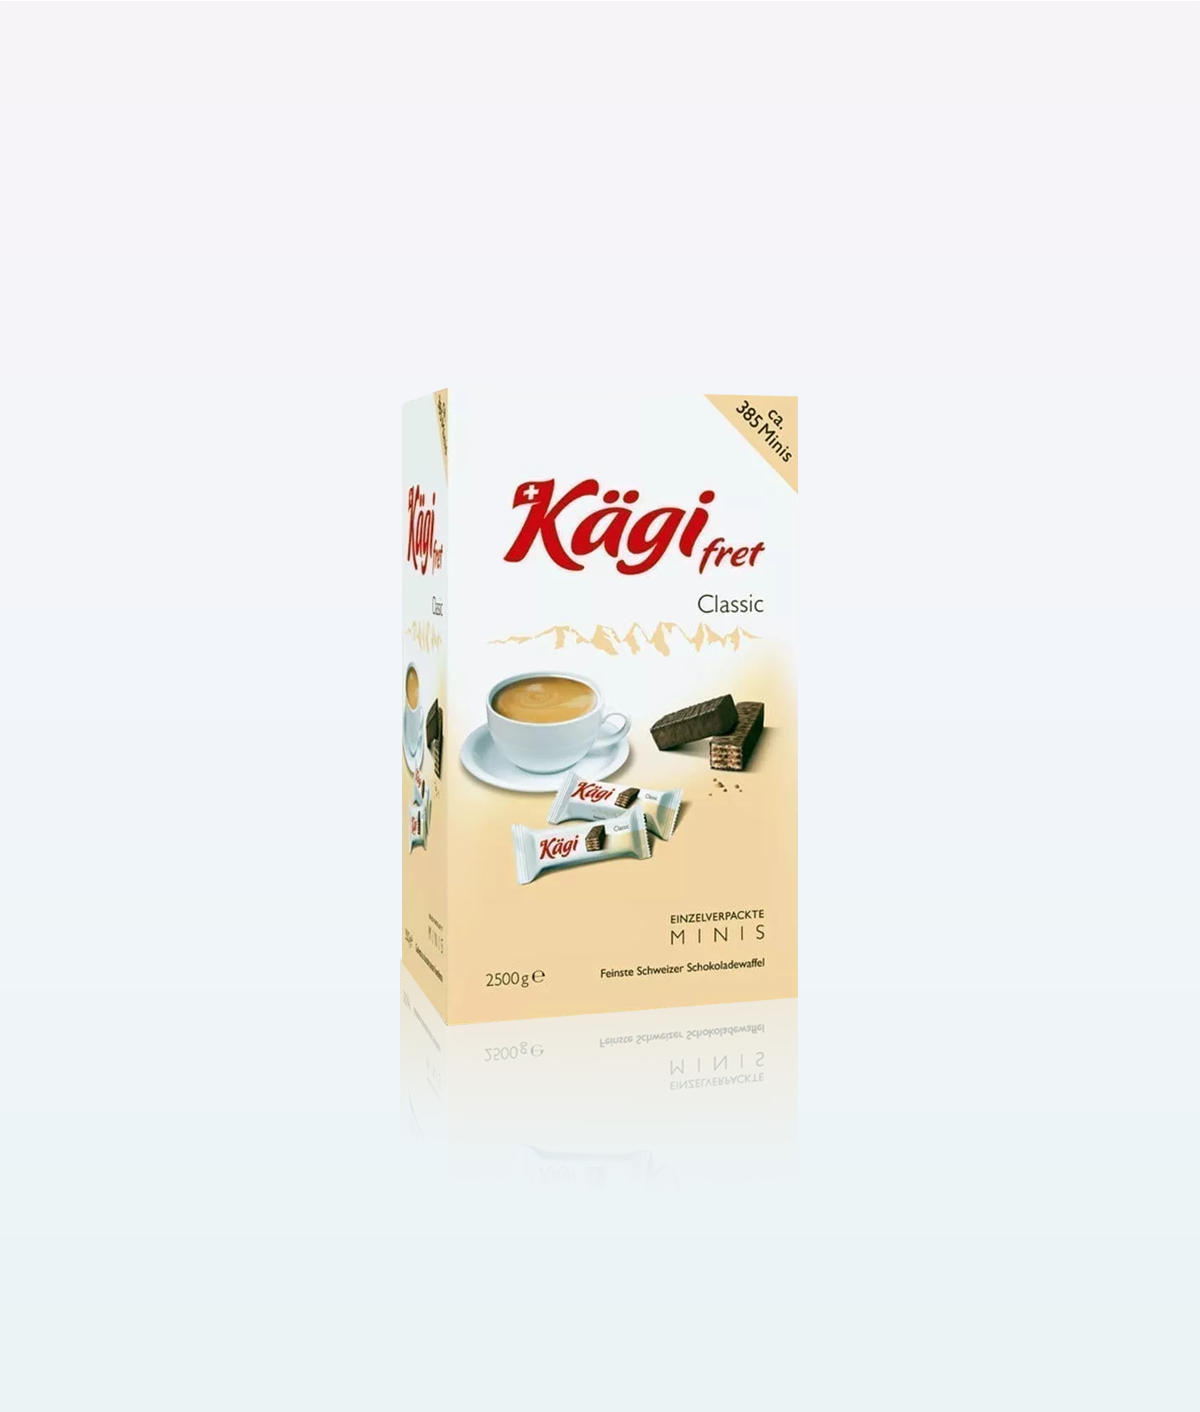 Mini boîte classique de gaufrettes Kagi Fret